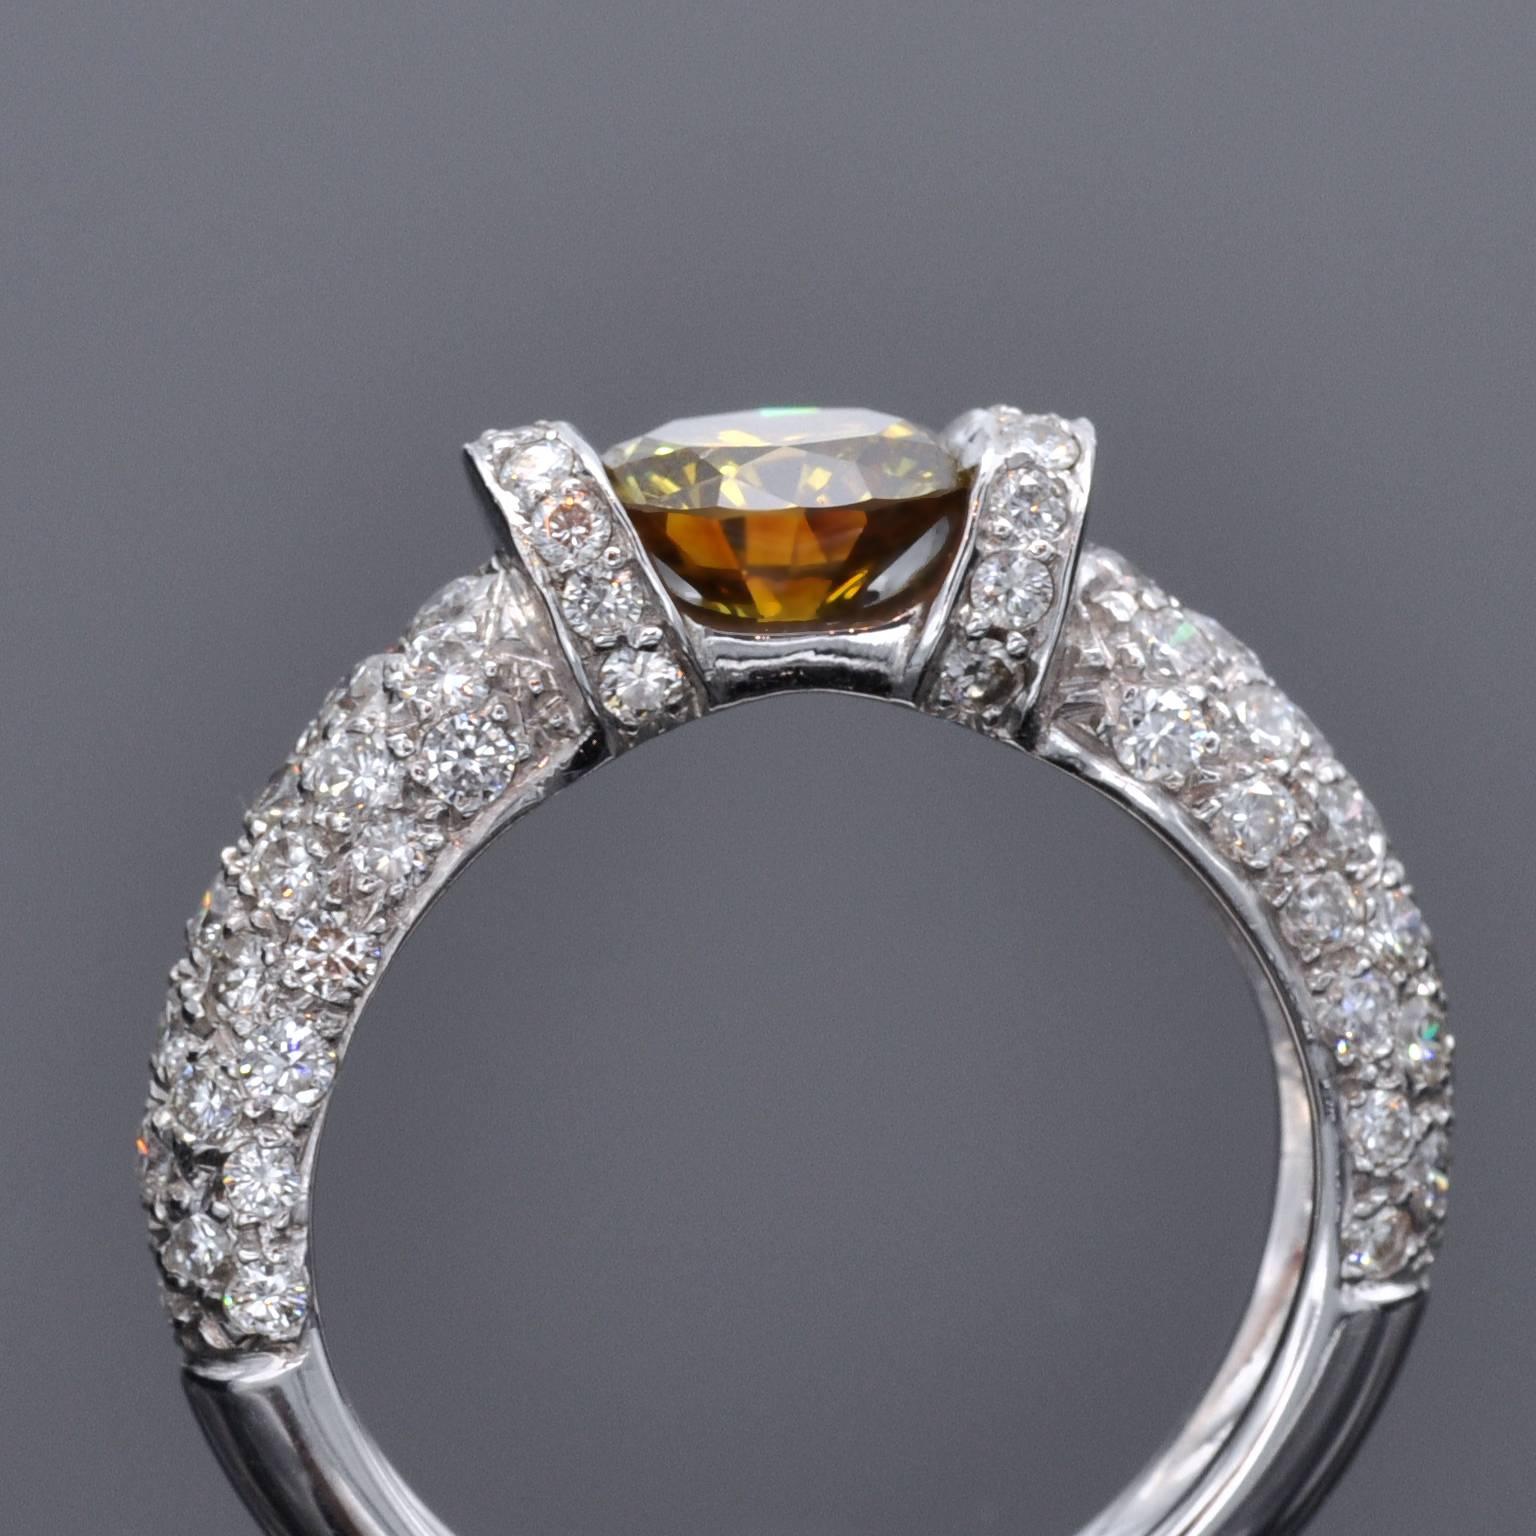 Étonnante bague solitaire de fiançailles. Le diamant central, un diamant rond de 1,25 carat de couleur jaune orange intense pesant seulement sur les côtés, révèle sa beauté de tous les côtés. Il est accompagné d'un certificat HRD (le principal